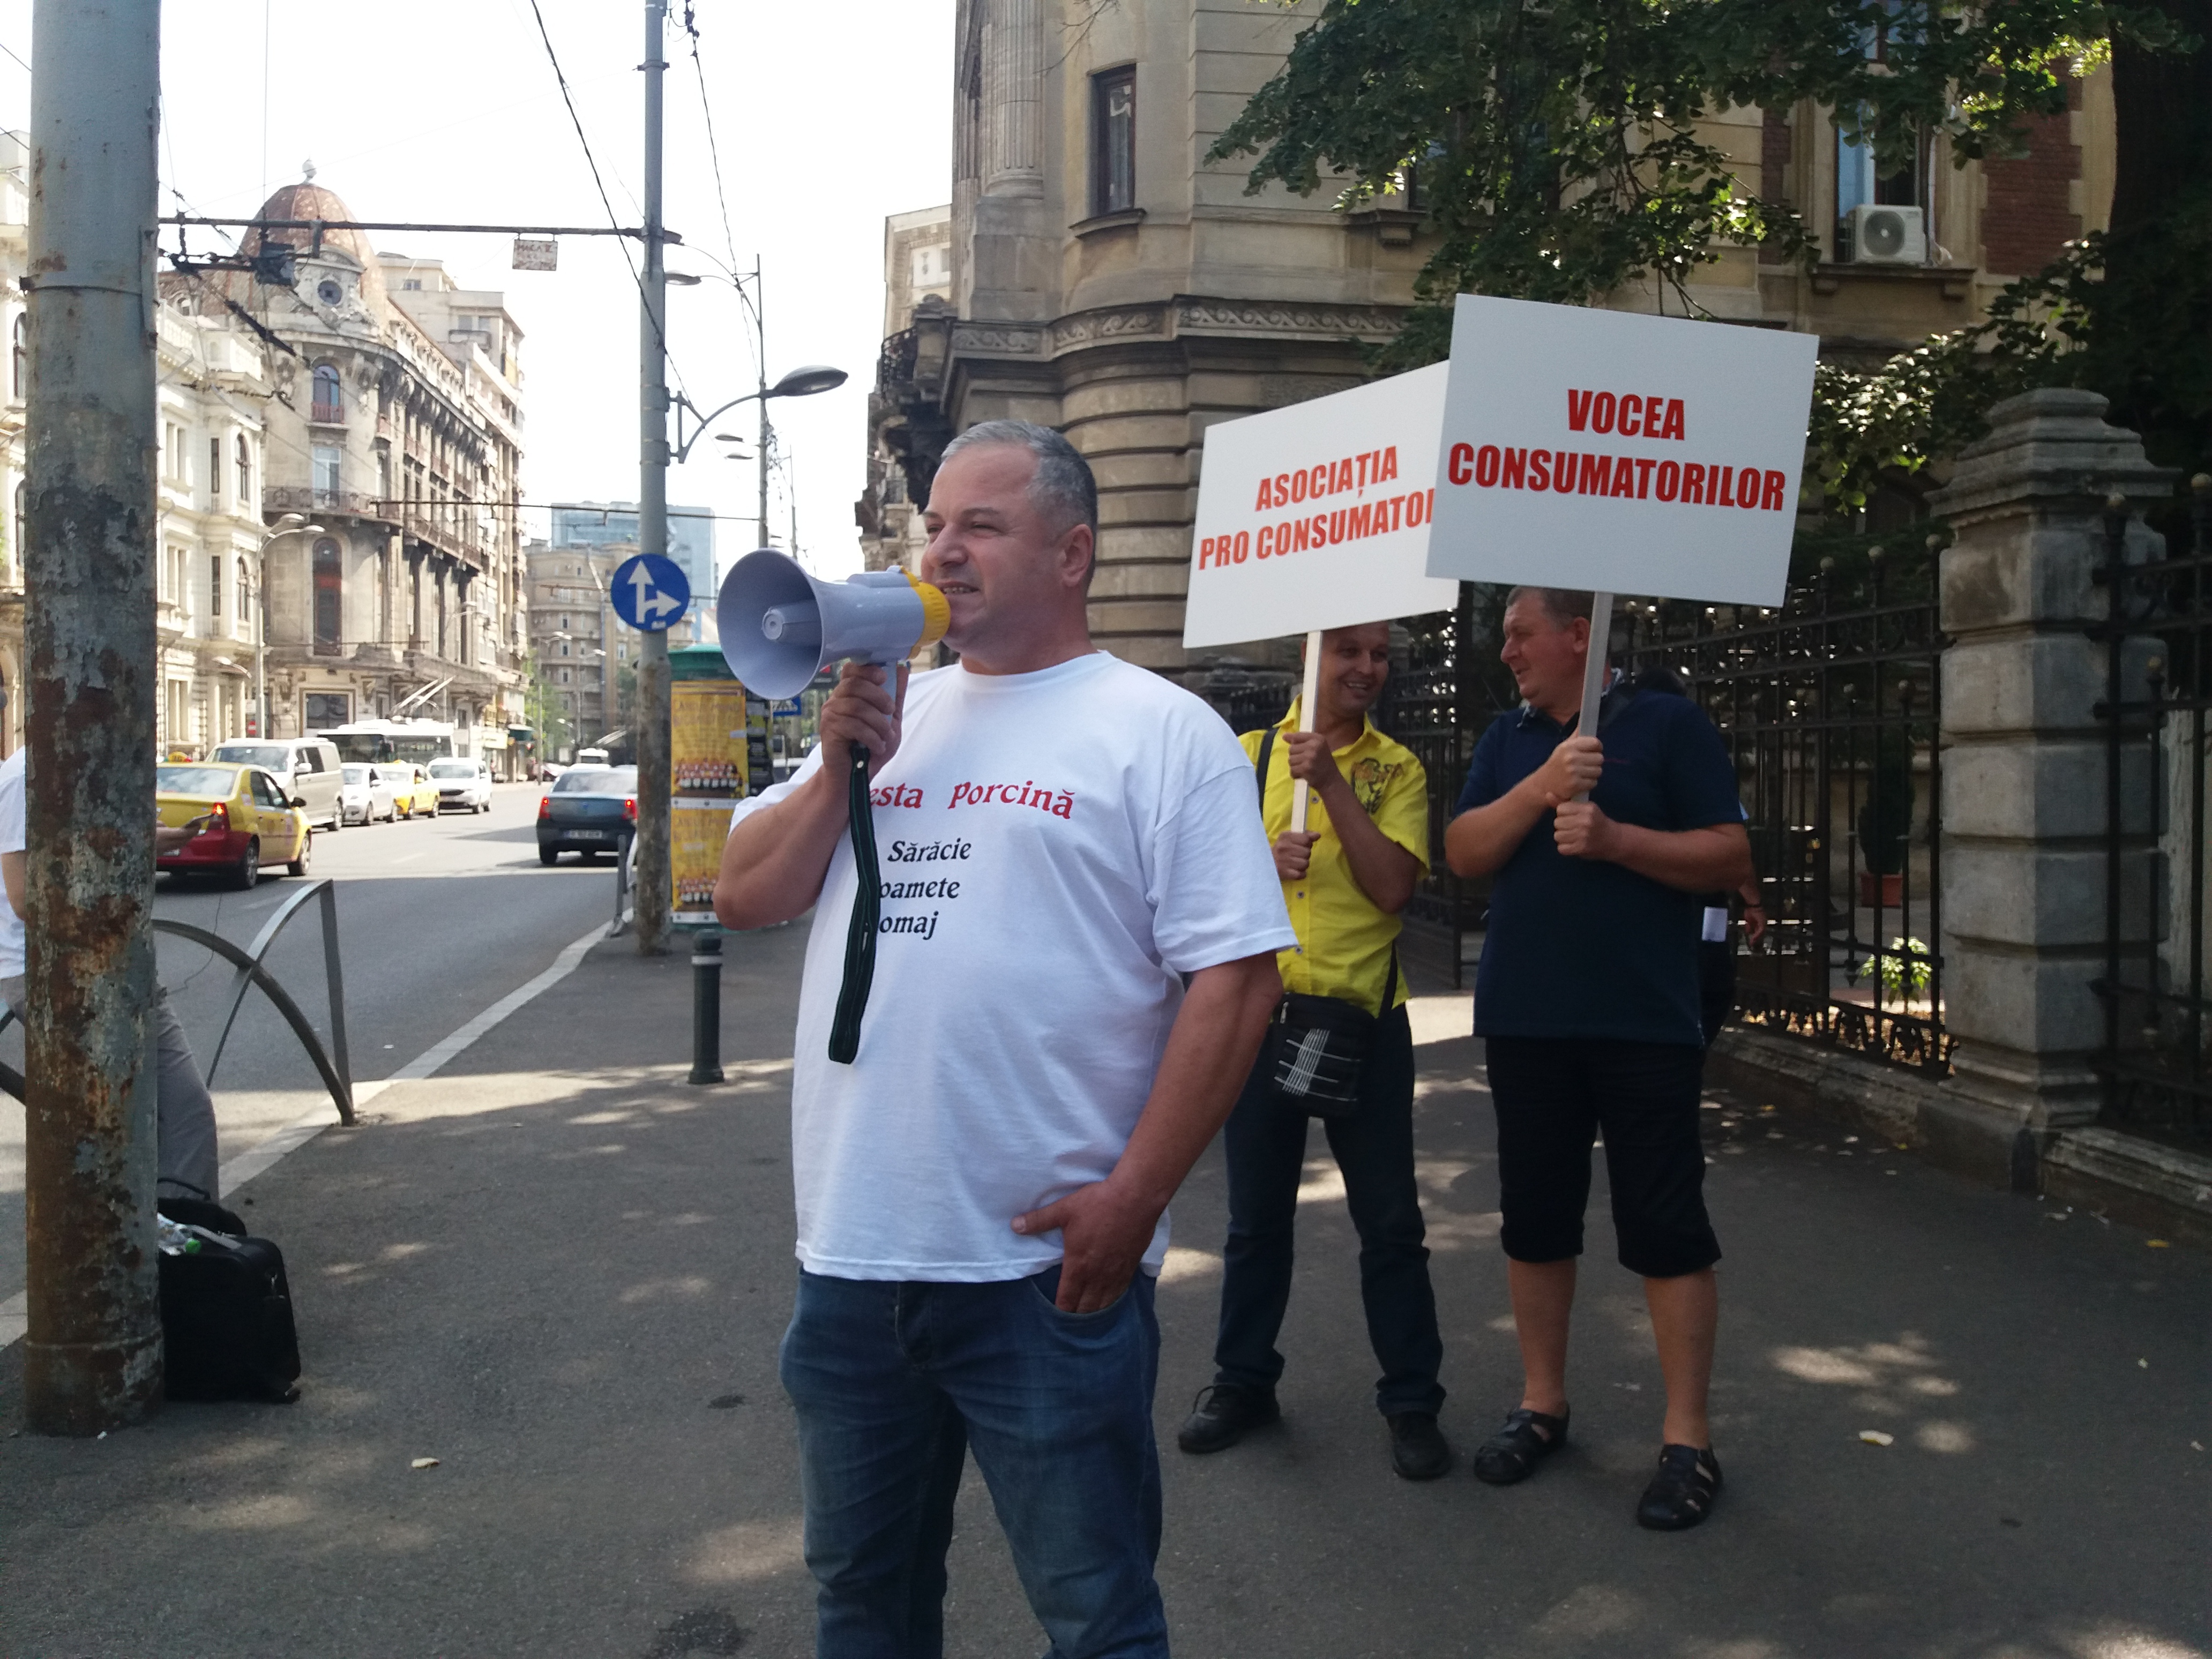 Asociaţia Pro Consumatori protestează în faţa Ministerului Agriculturi împotriva pestei porcine africane: "Nu vrem carne de porc din import cu gust de plastic. Virusul inchide mii de afaceri româneşti"